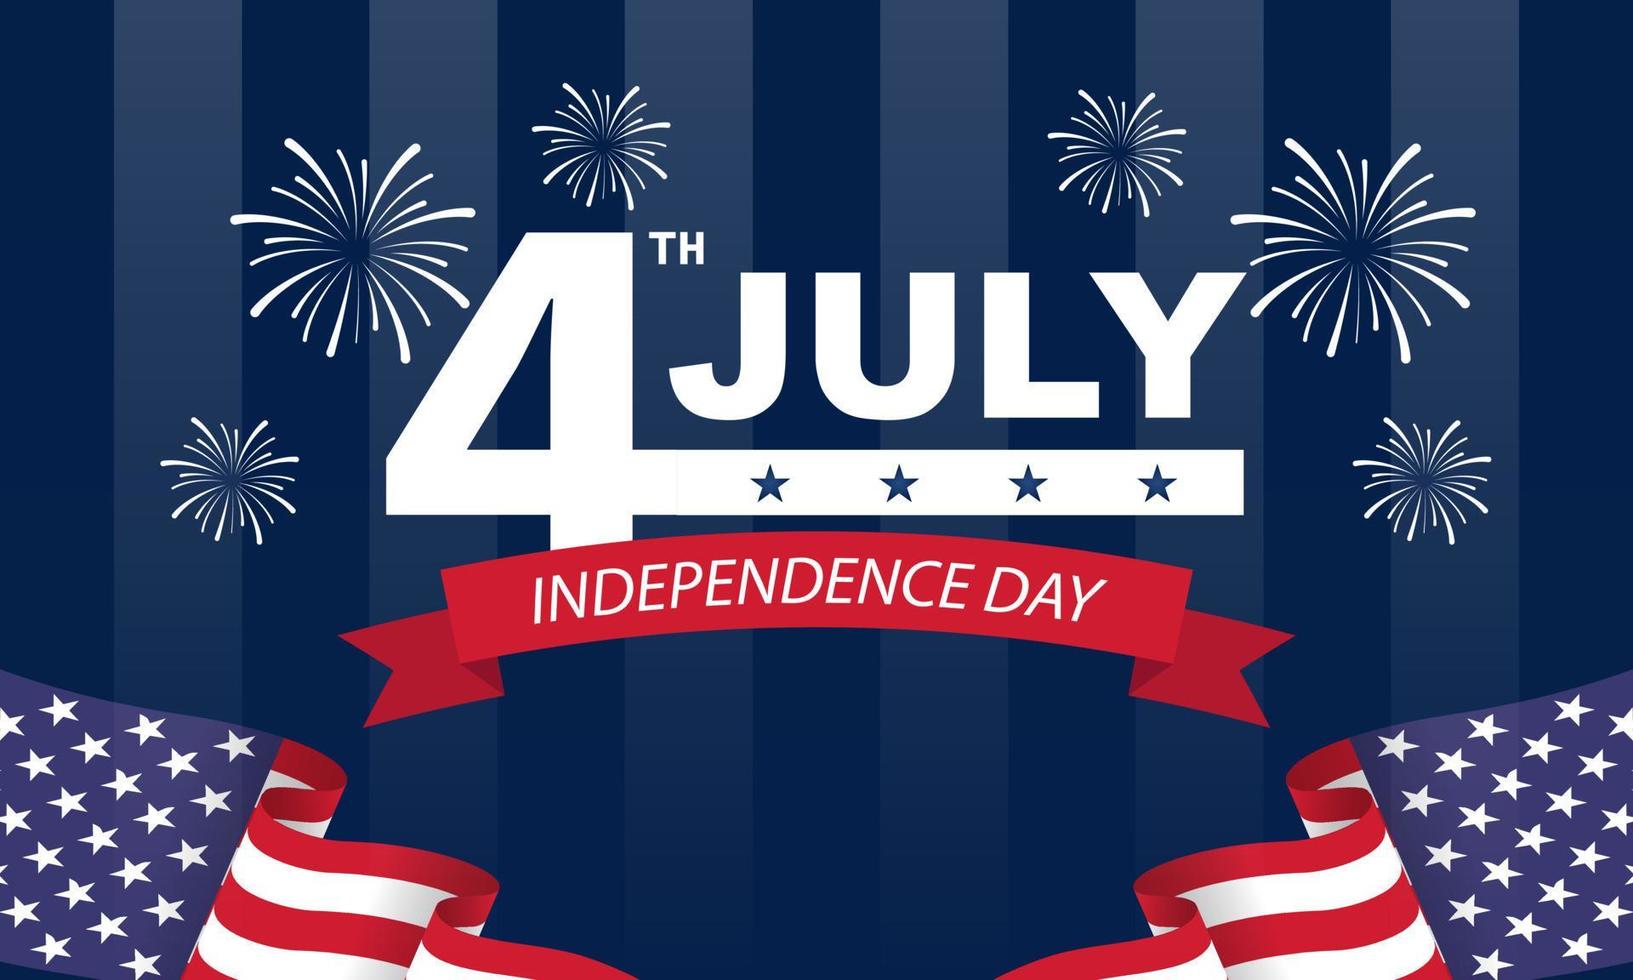 vierde van juli achtergrond - Amerikaanse onafhankelijkheidsdag vectorillustratie - 4 juli typografisch ontwerp usa vector